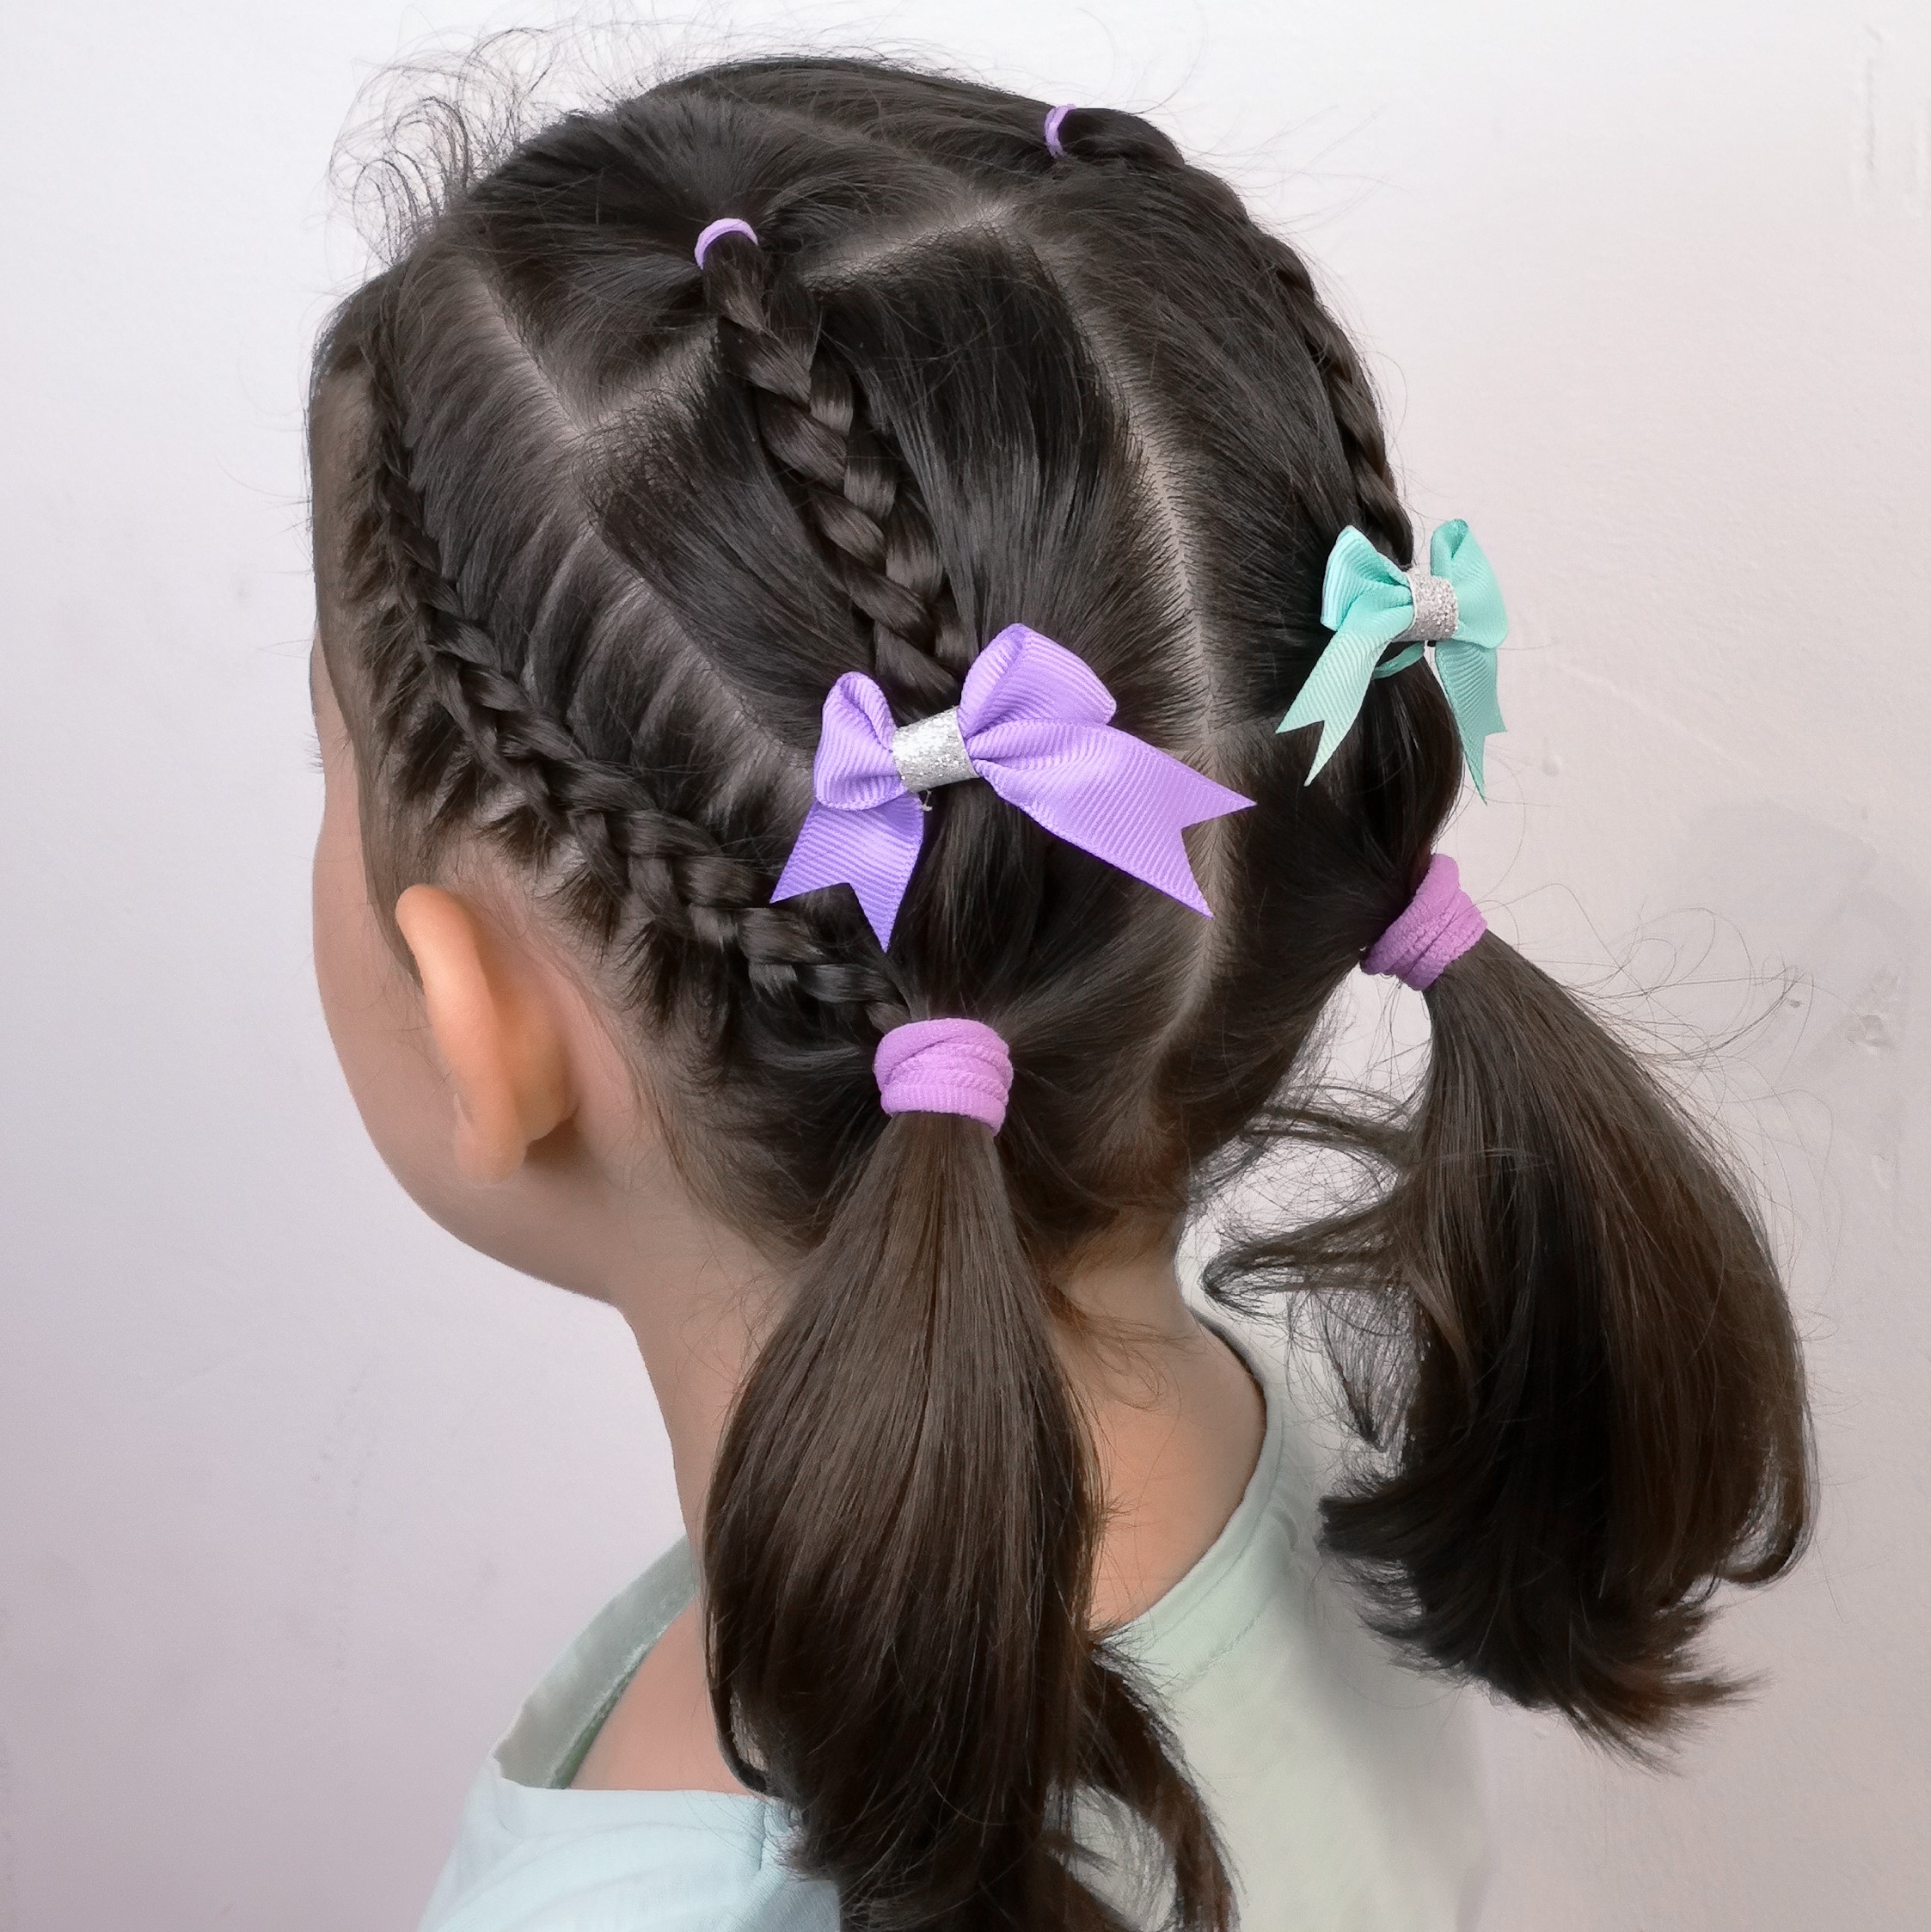 Peinados lindos con coletas y ligas para niñas con cabello largo   Manoslindascom